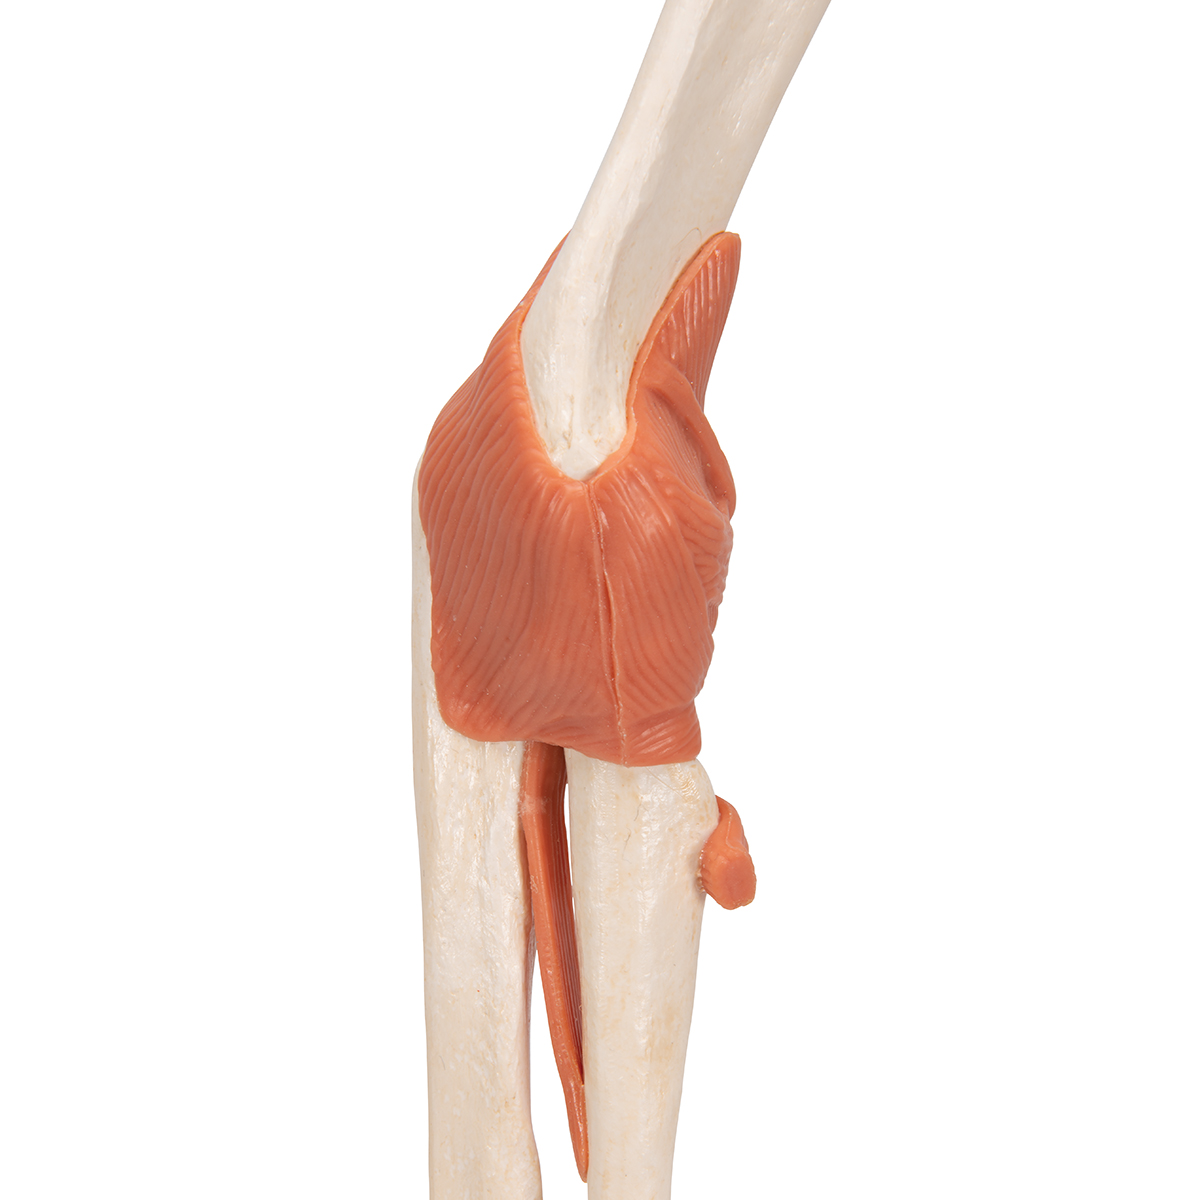 1 Life Size Anatomical Model Skeleton,Elbowjoint,Medical Models Educational Model Scientific Human Joint AnatomyShoulder/Foot/Elbow/Hip/Knee/Wrist Skeleton Model Hip 1 